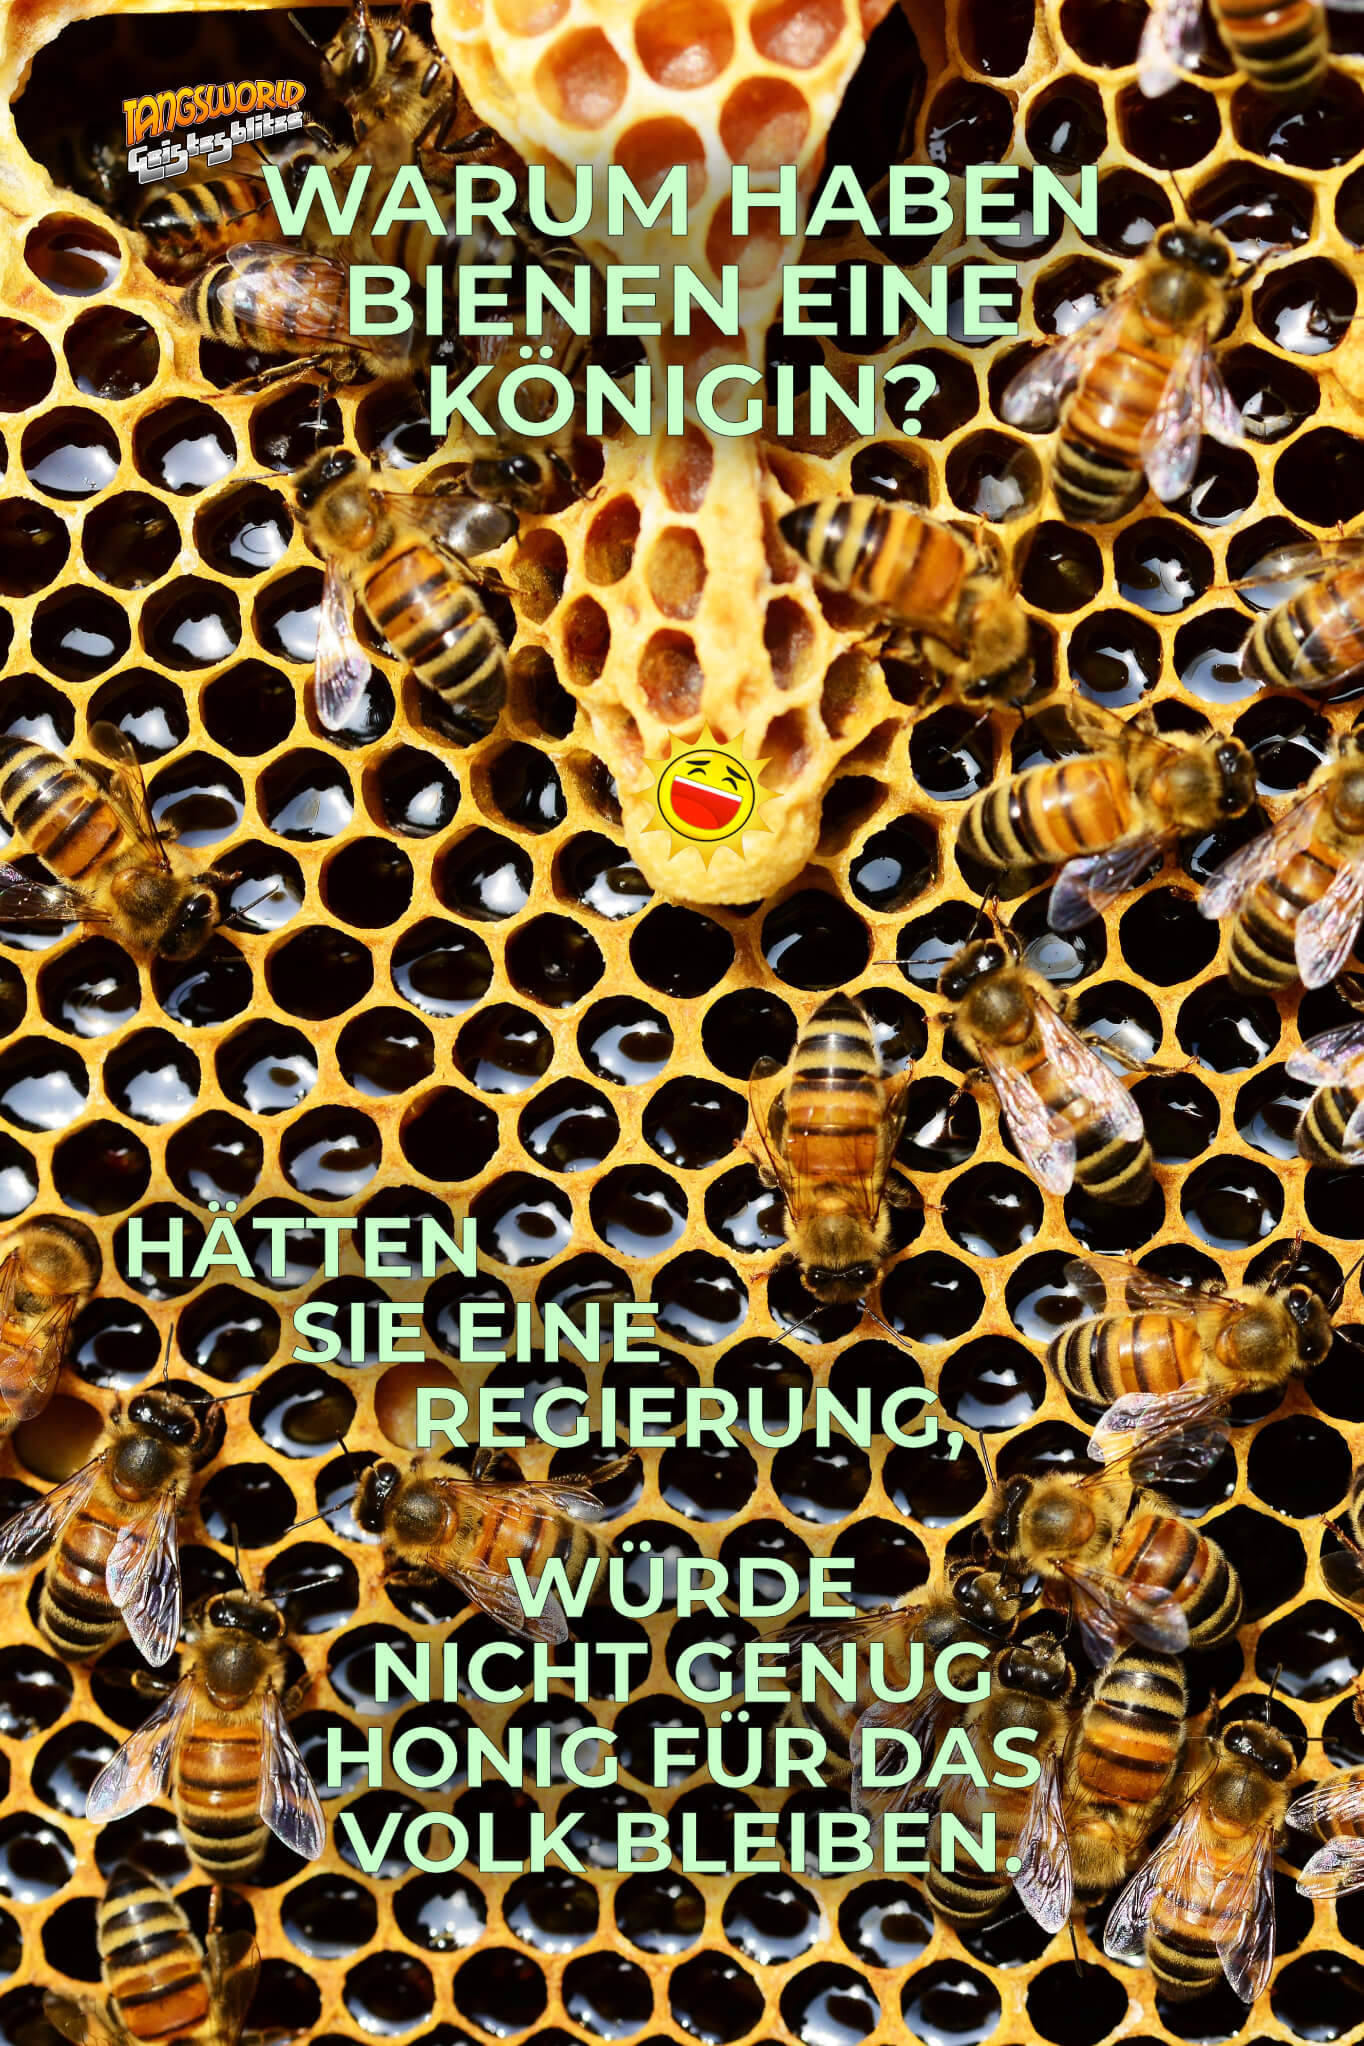 Warum haben Bienen eine Königin? Hätten sie eine Regierung, würde nicht genug Honig für das Volk bleiben. - Geistes(bl)witze